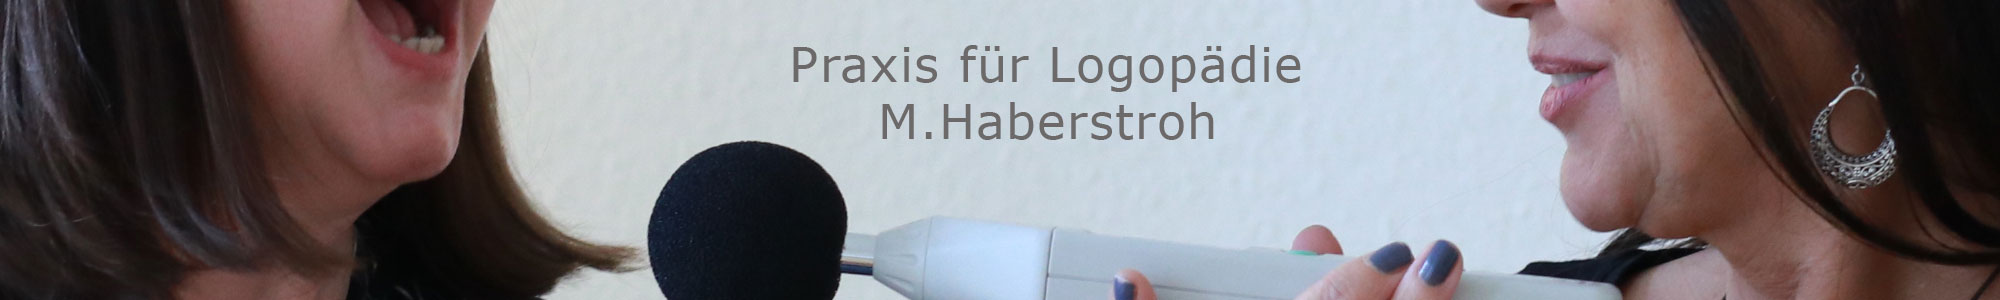 Logopädie Haberstroh Düsseldorf